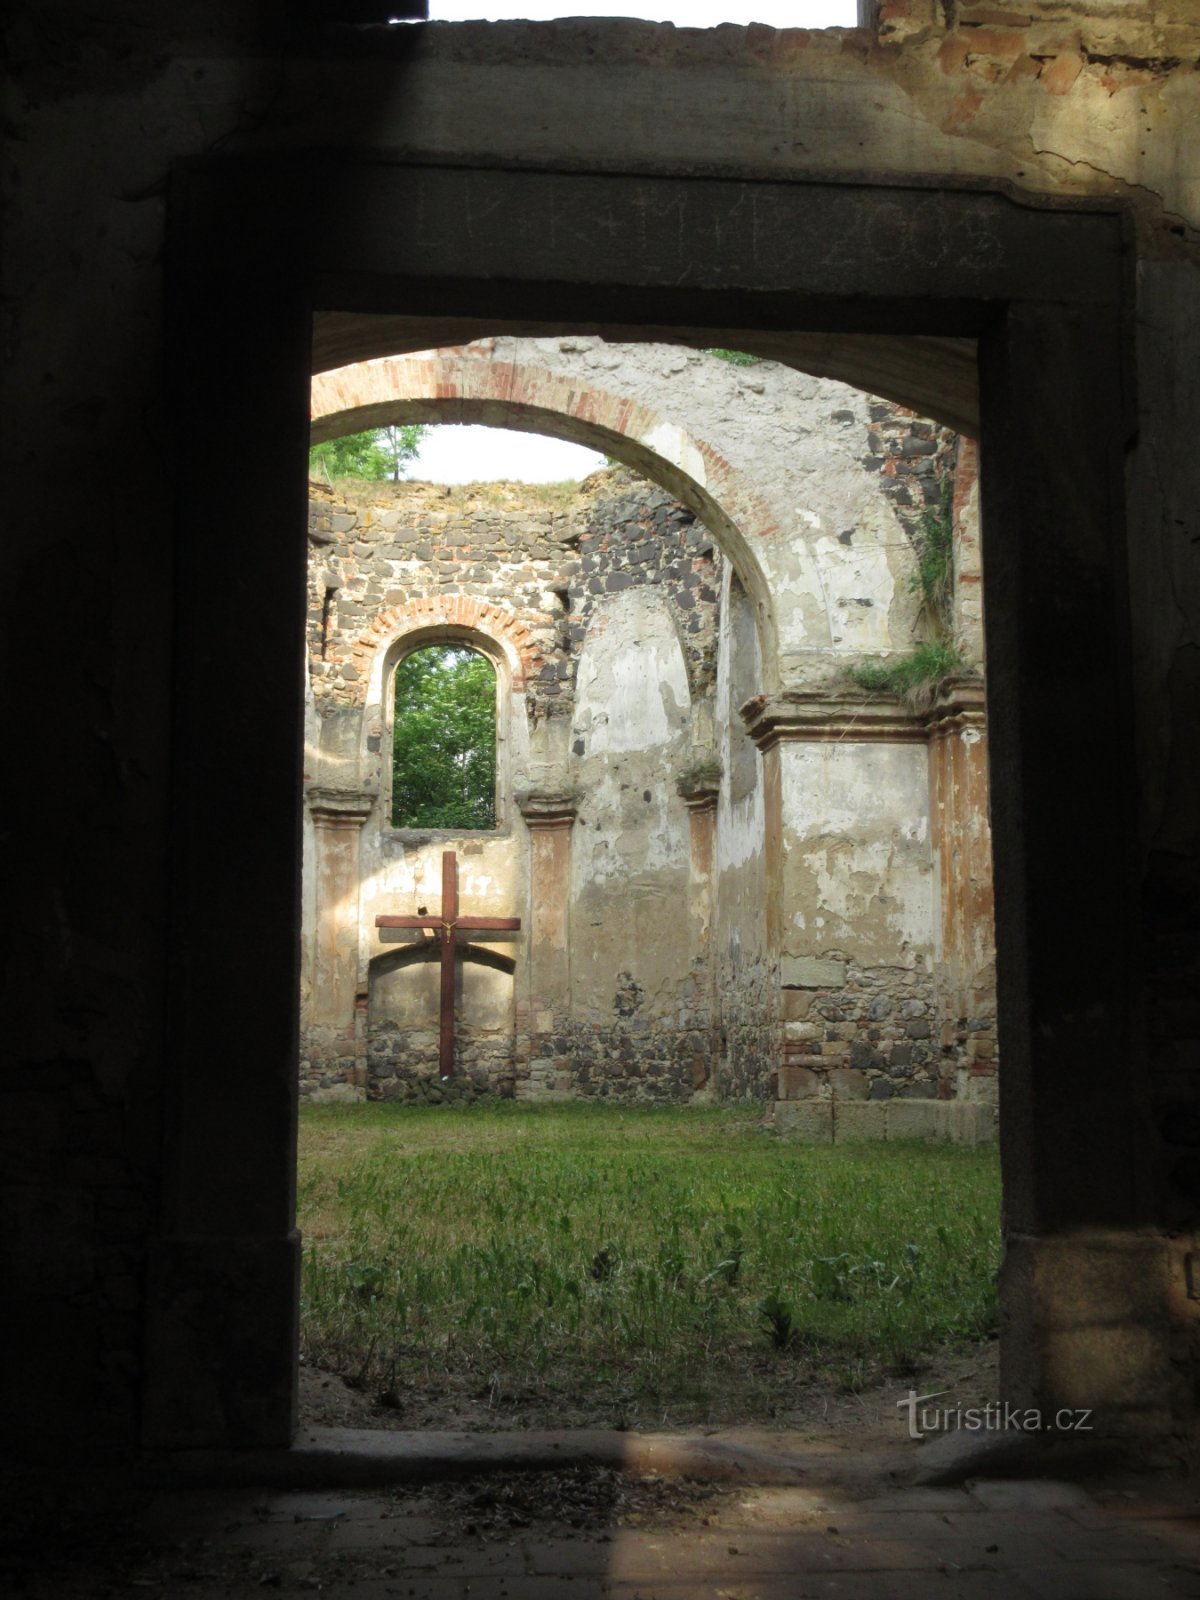 Zlovědice - ruínas da igreja de St. Michael